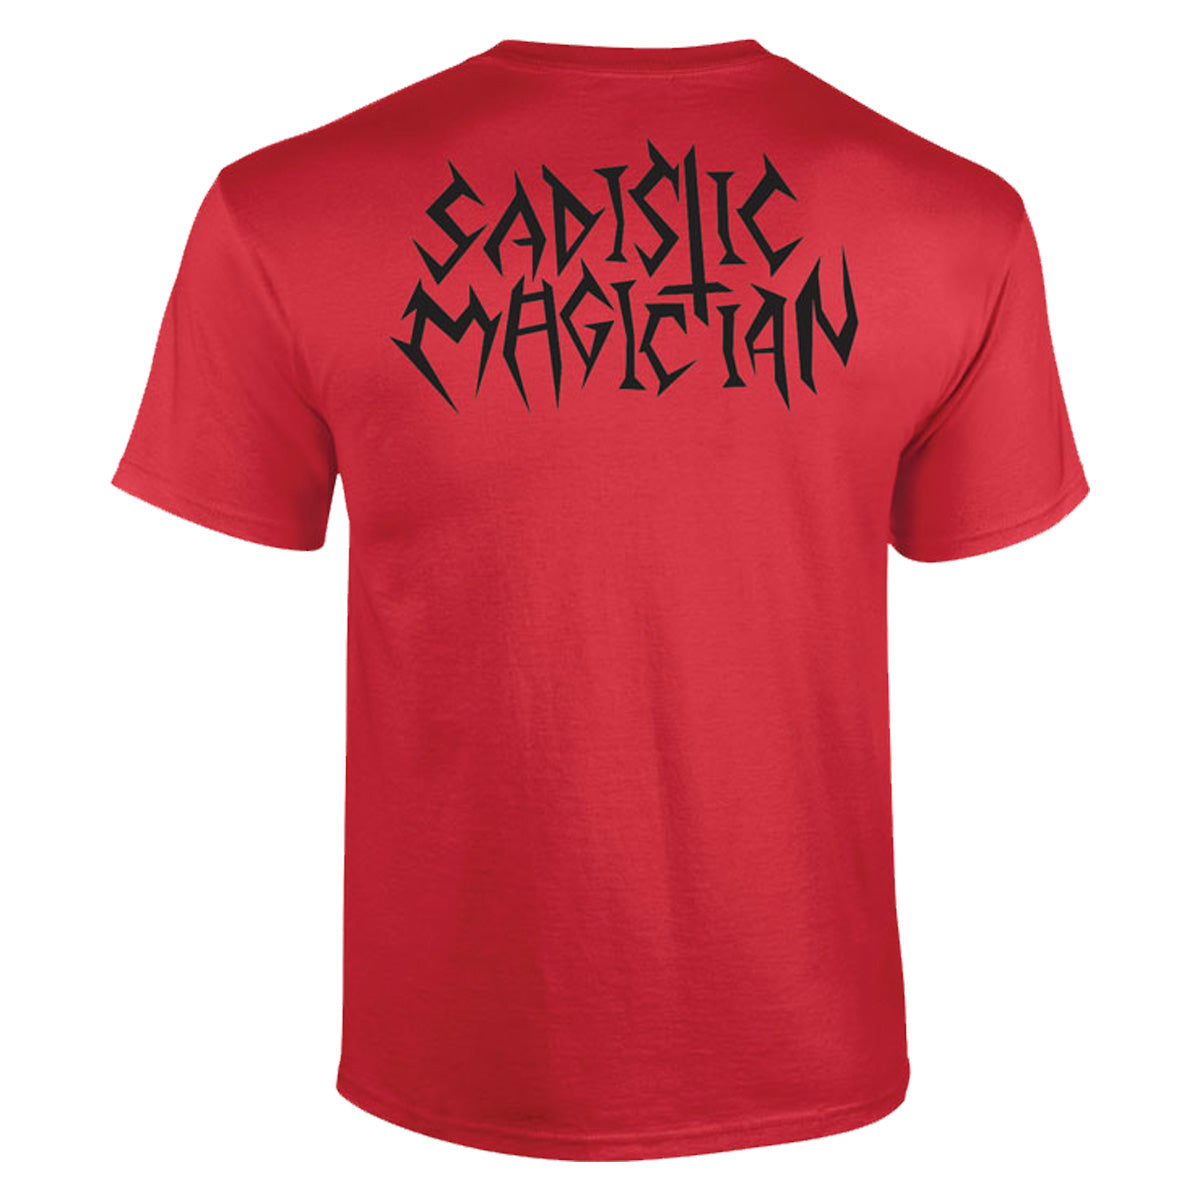 Sadistic Magician T-Shirt